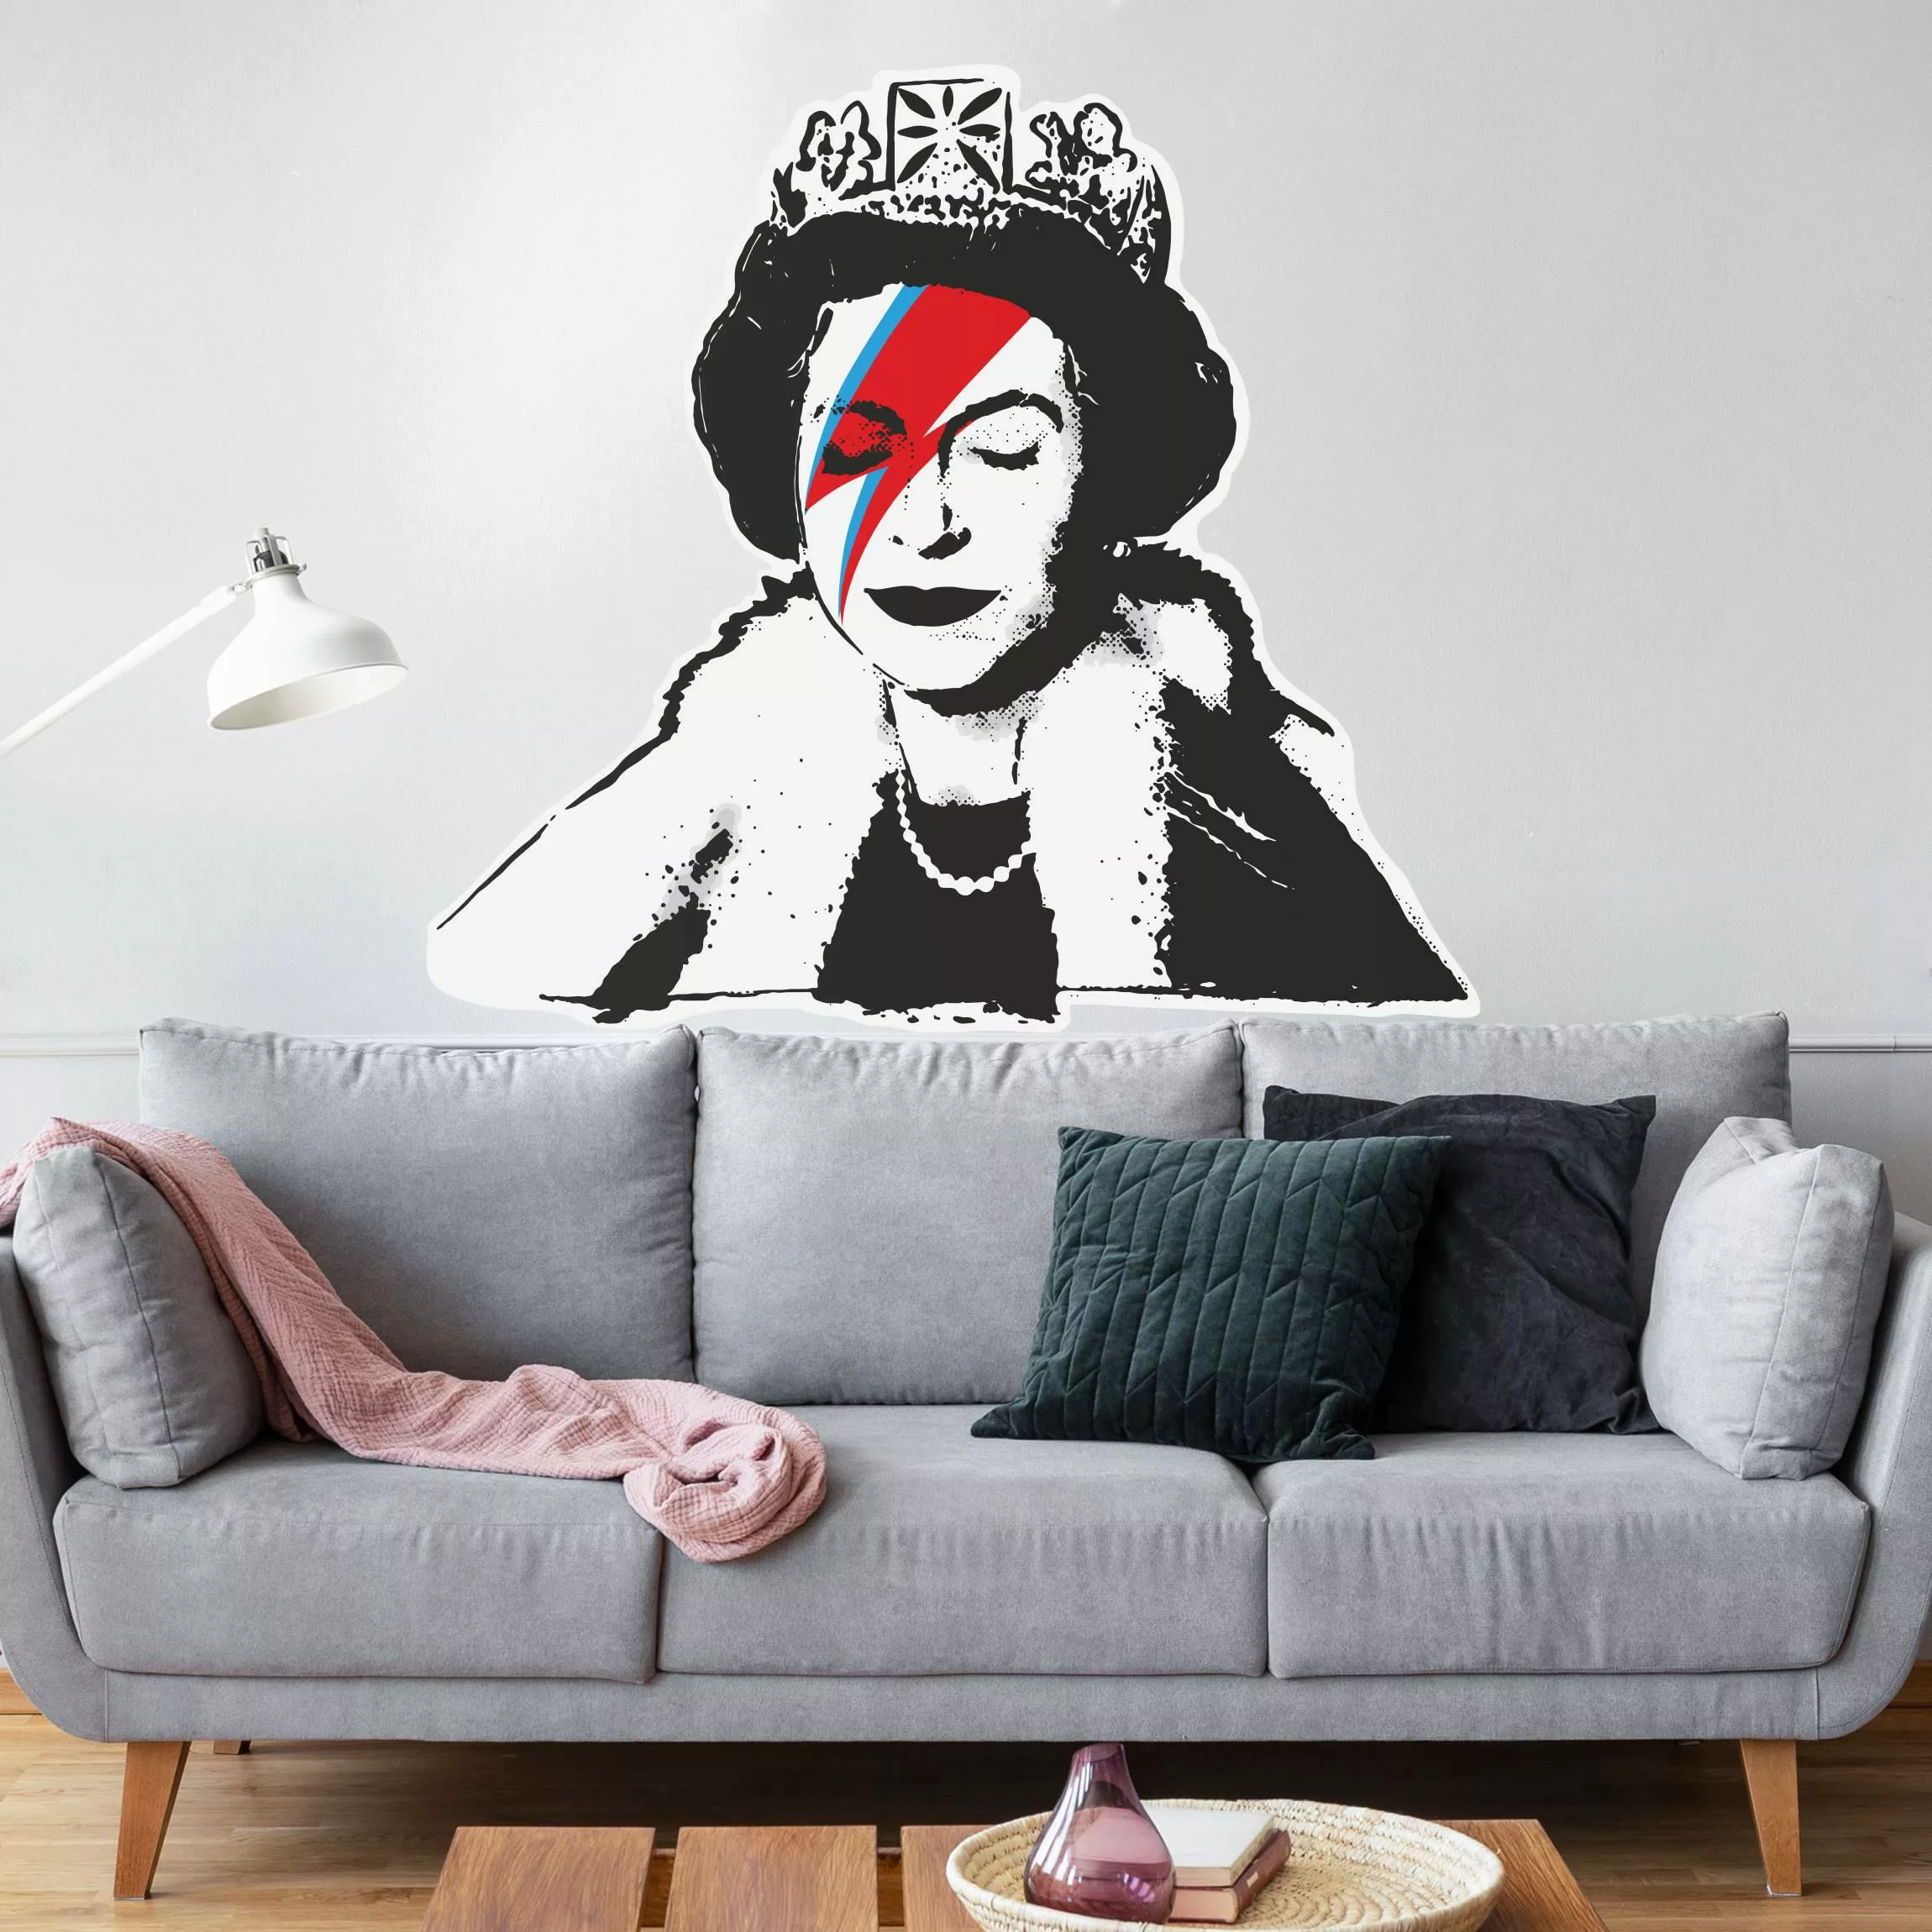 Wandtattoo Queen Lizzie Stardust - Brandalised ft. Graffiti by Banksy günstig online kaufen